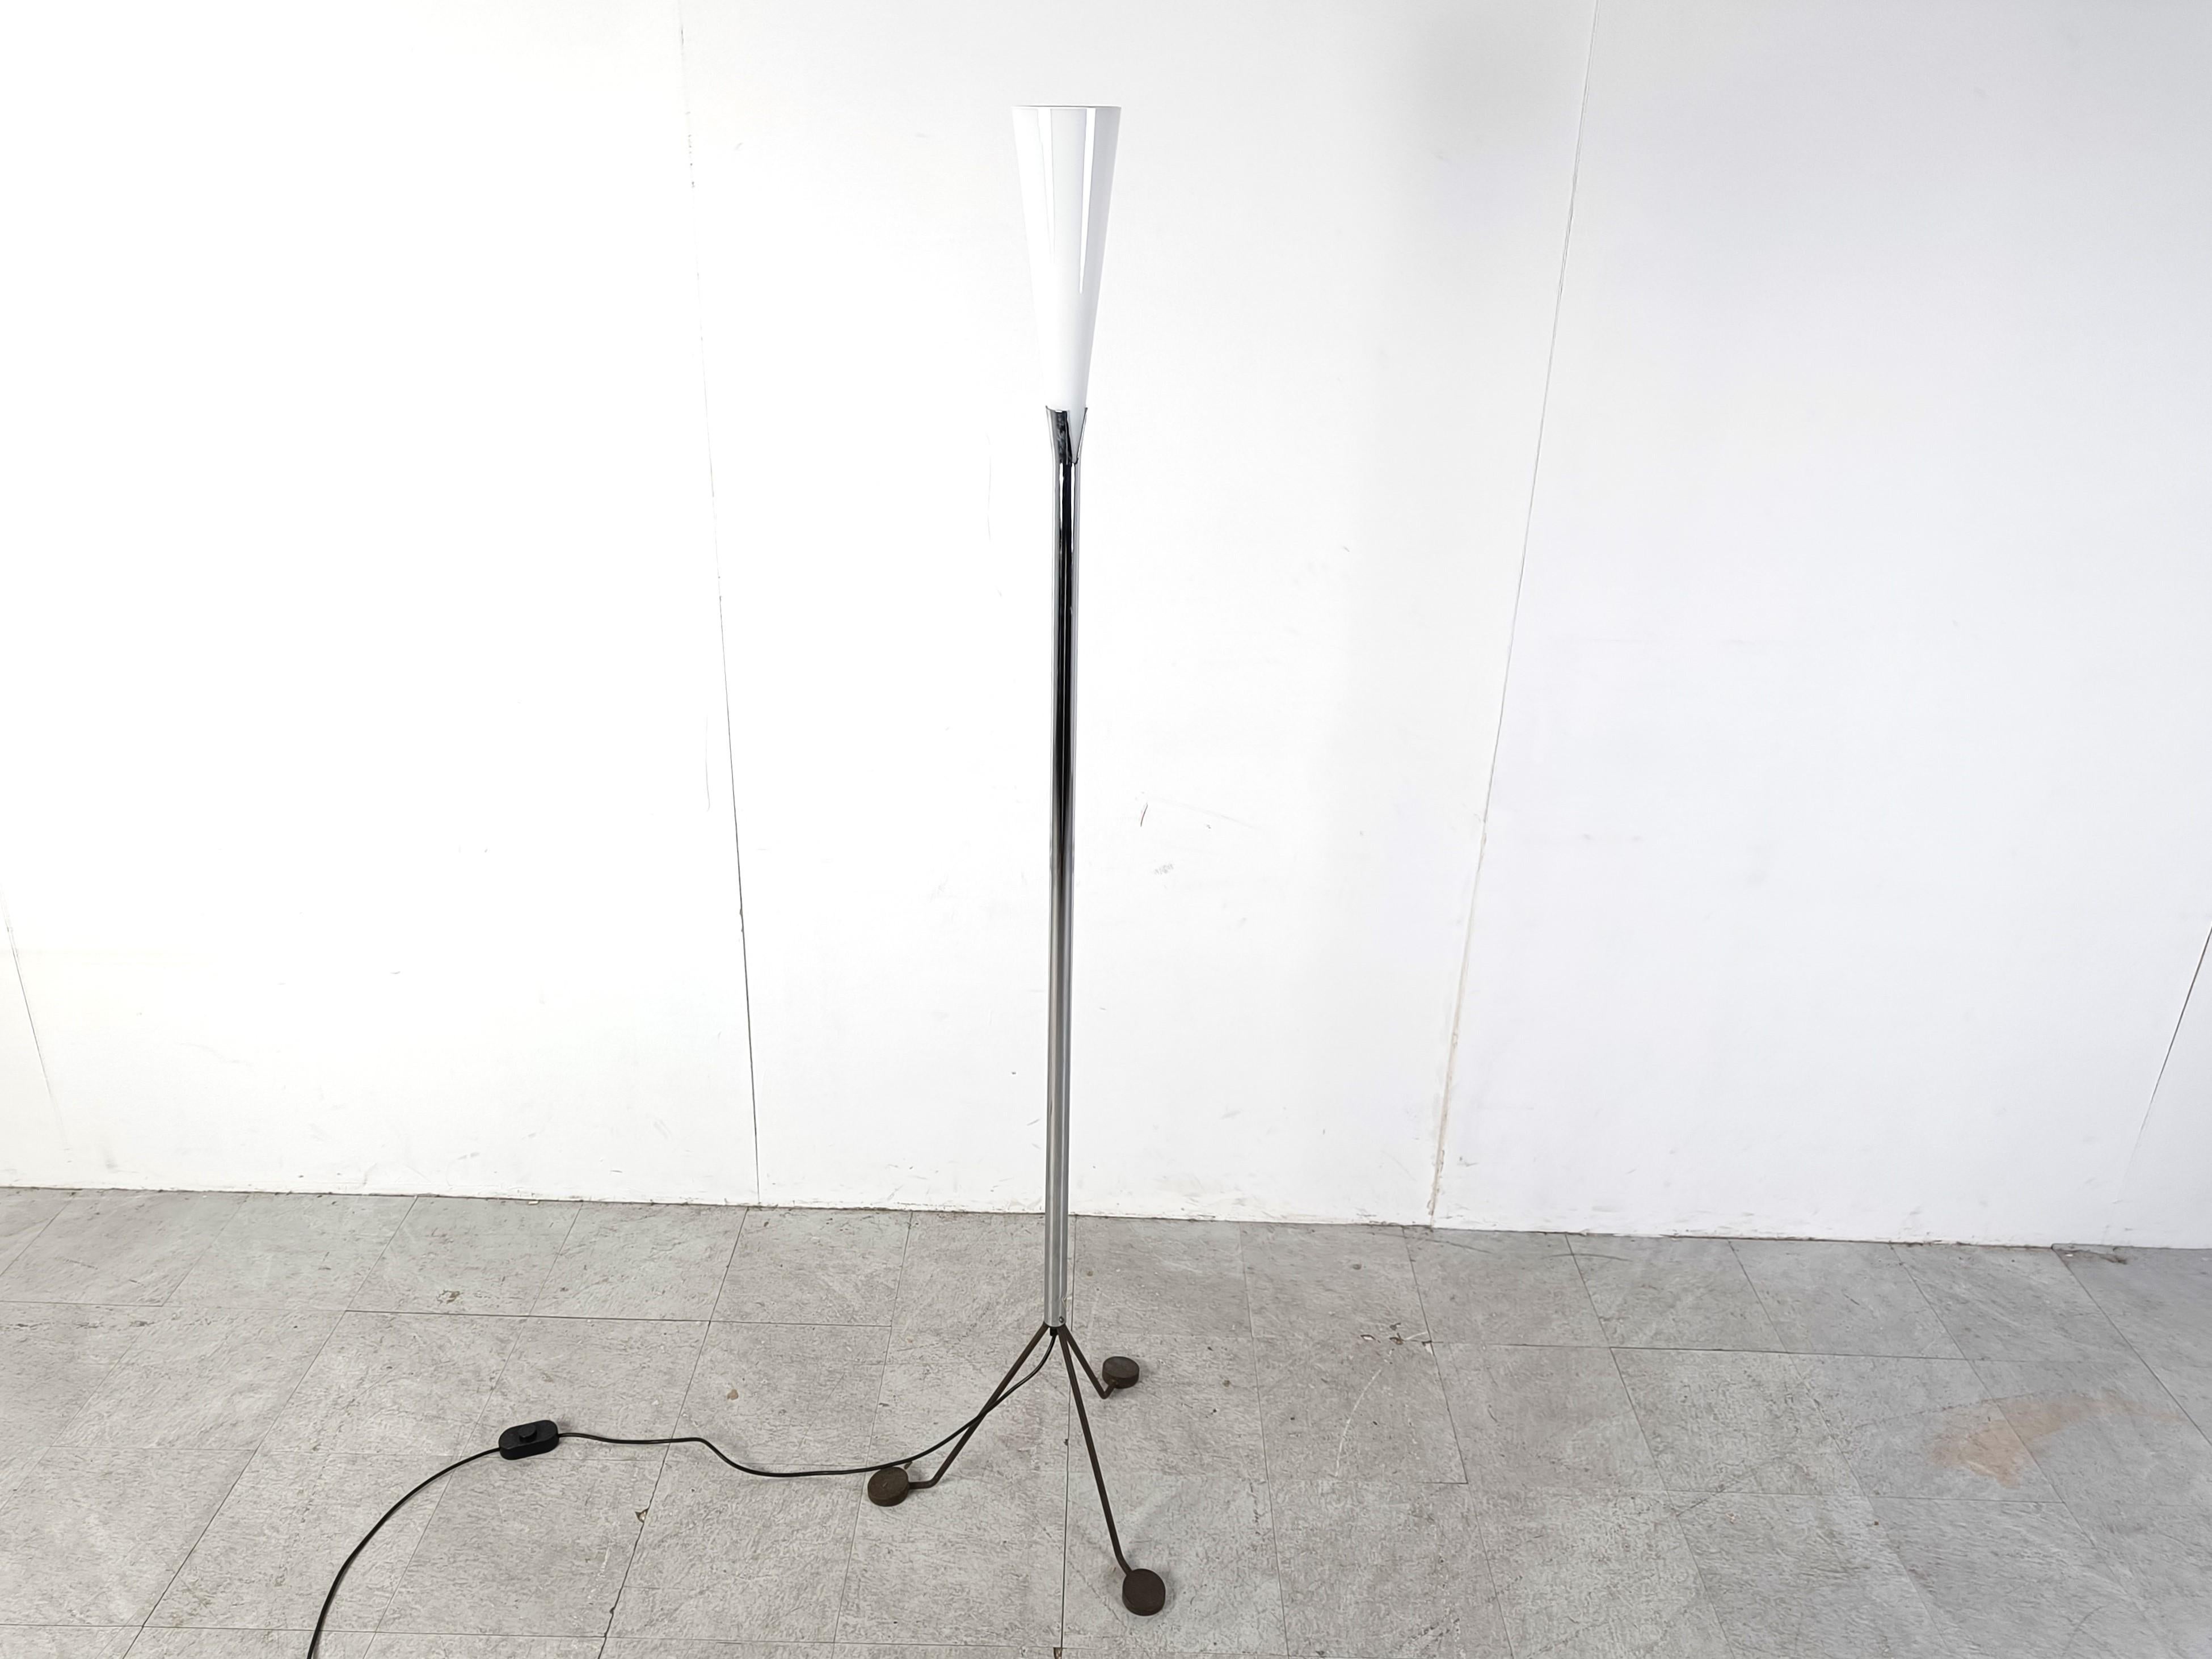 Vintage-Stehleuchte 'Line', entworfen von Jeannot Cerutti für Veart.

Die Lampe hat einen dreibeinigen Metallsockel und einen konischen Lampenschirm aus Murano-Glas.

Guter Zustand, getestet und einsatzbereit.

1990er Jahre - Italien

Höhe: